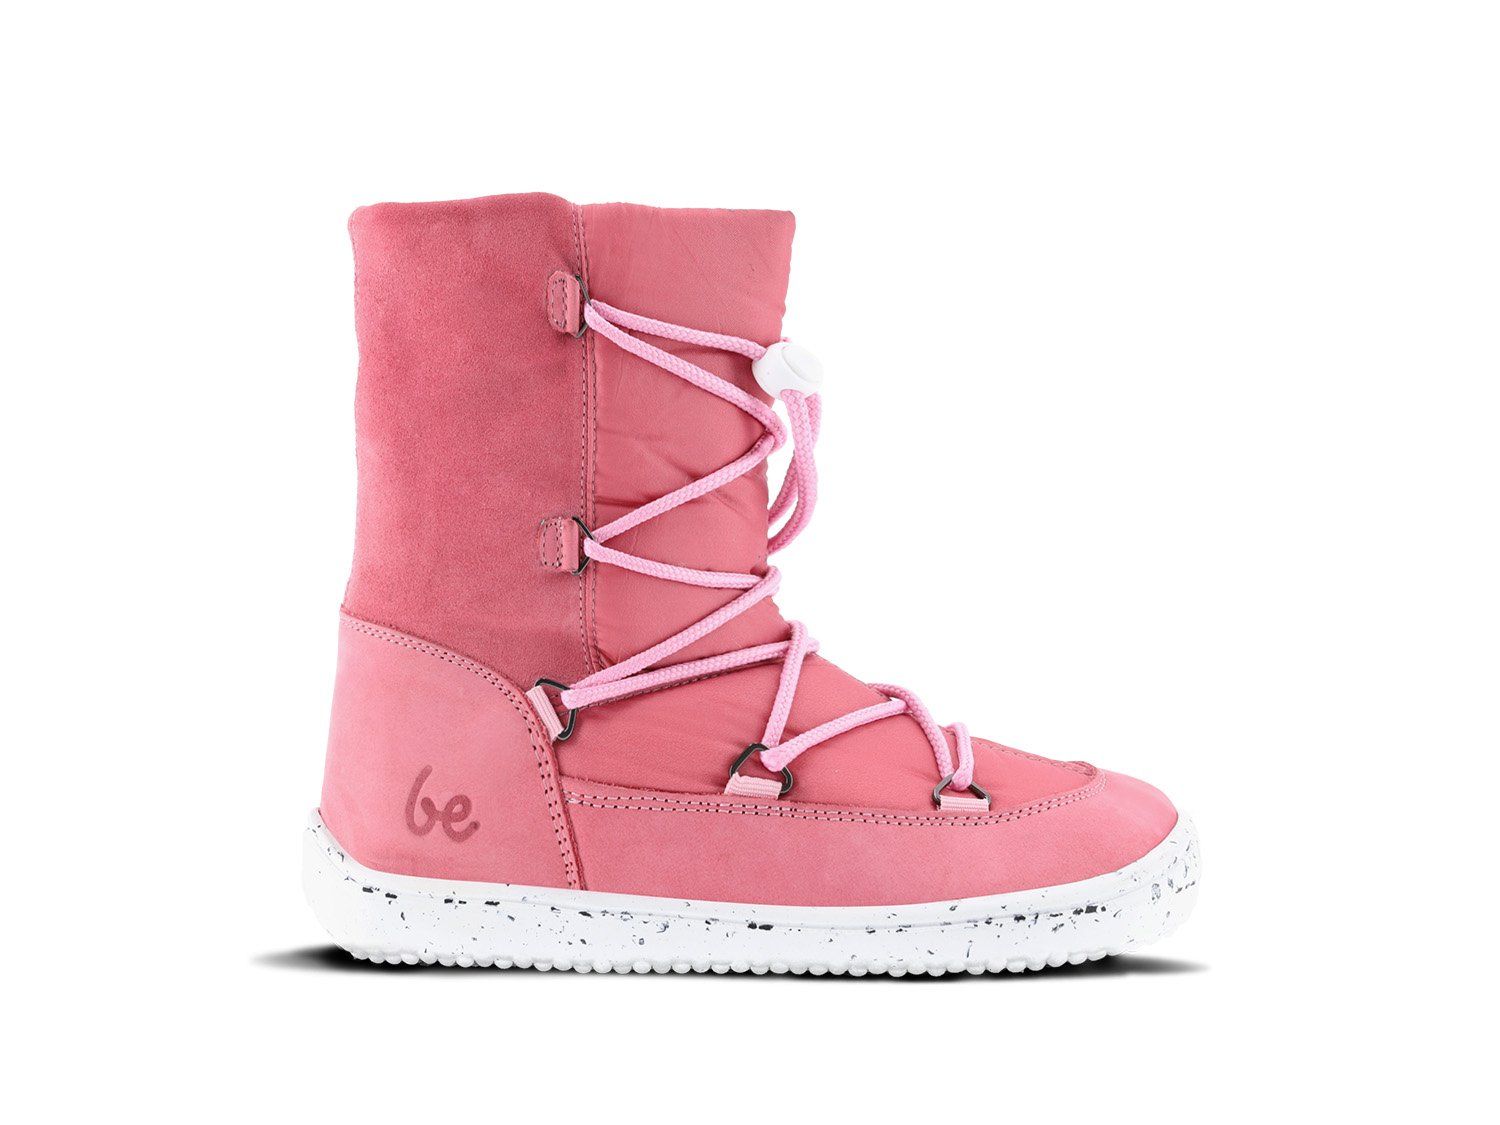 Barefoot Dětské zimní barefoot sněhule Be Lenka Snowfox 2.0 - rose pink bosá